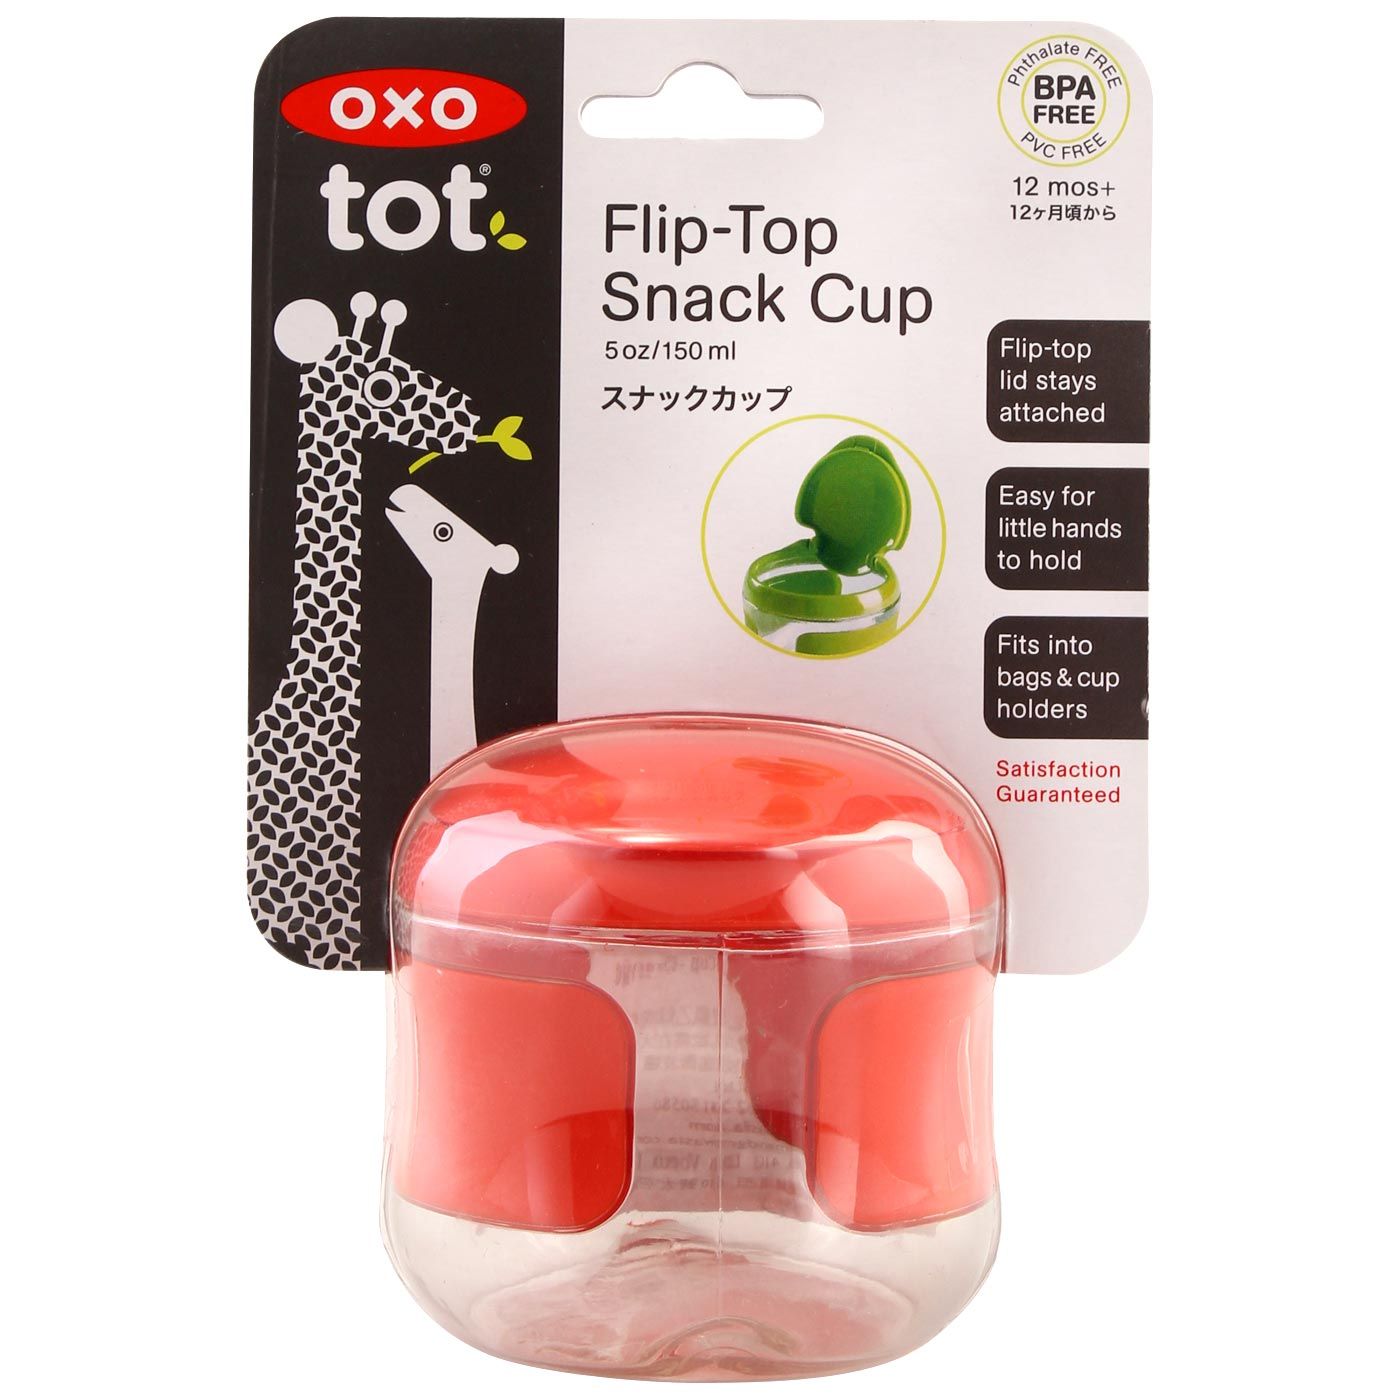 OXO Tot Flip-Top Snack Cup Orange - 2